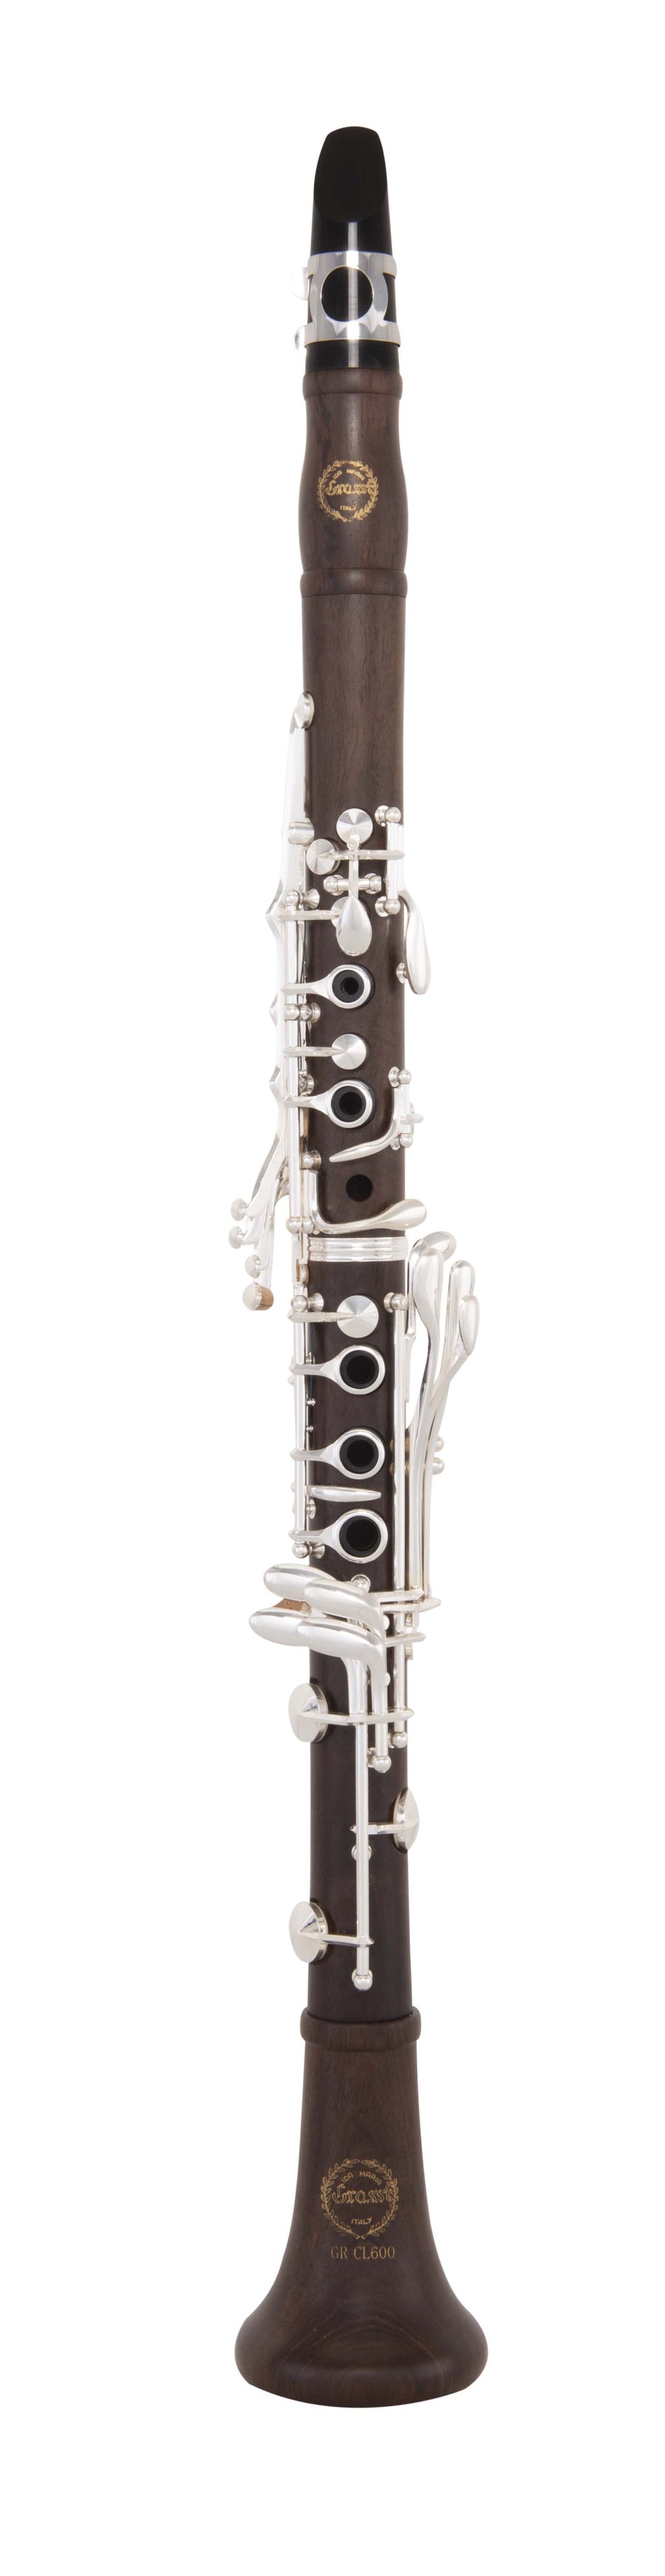 Grassi GR CL600 Clarinet in Bb 18 Keys Grenadilla Wood (Master Series)